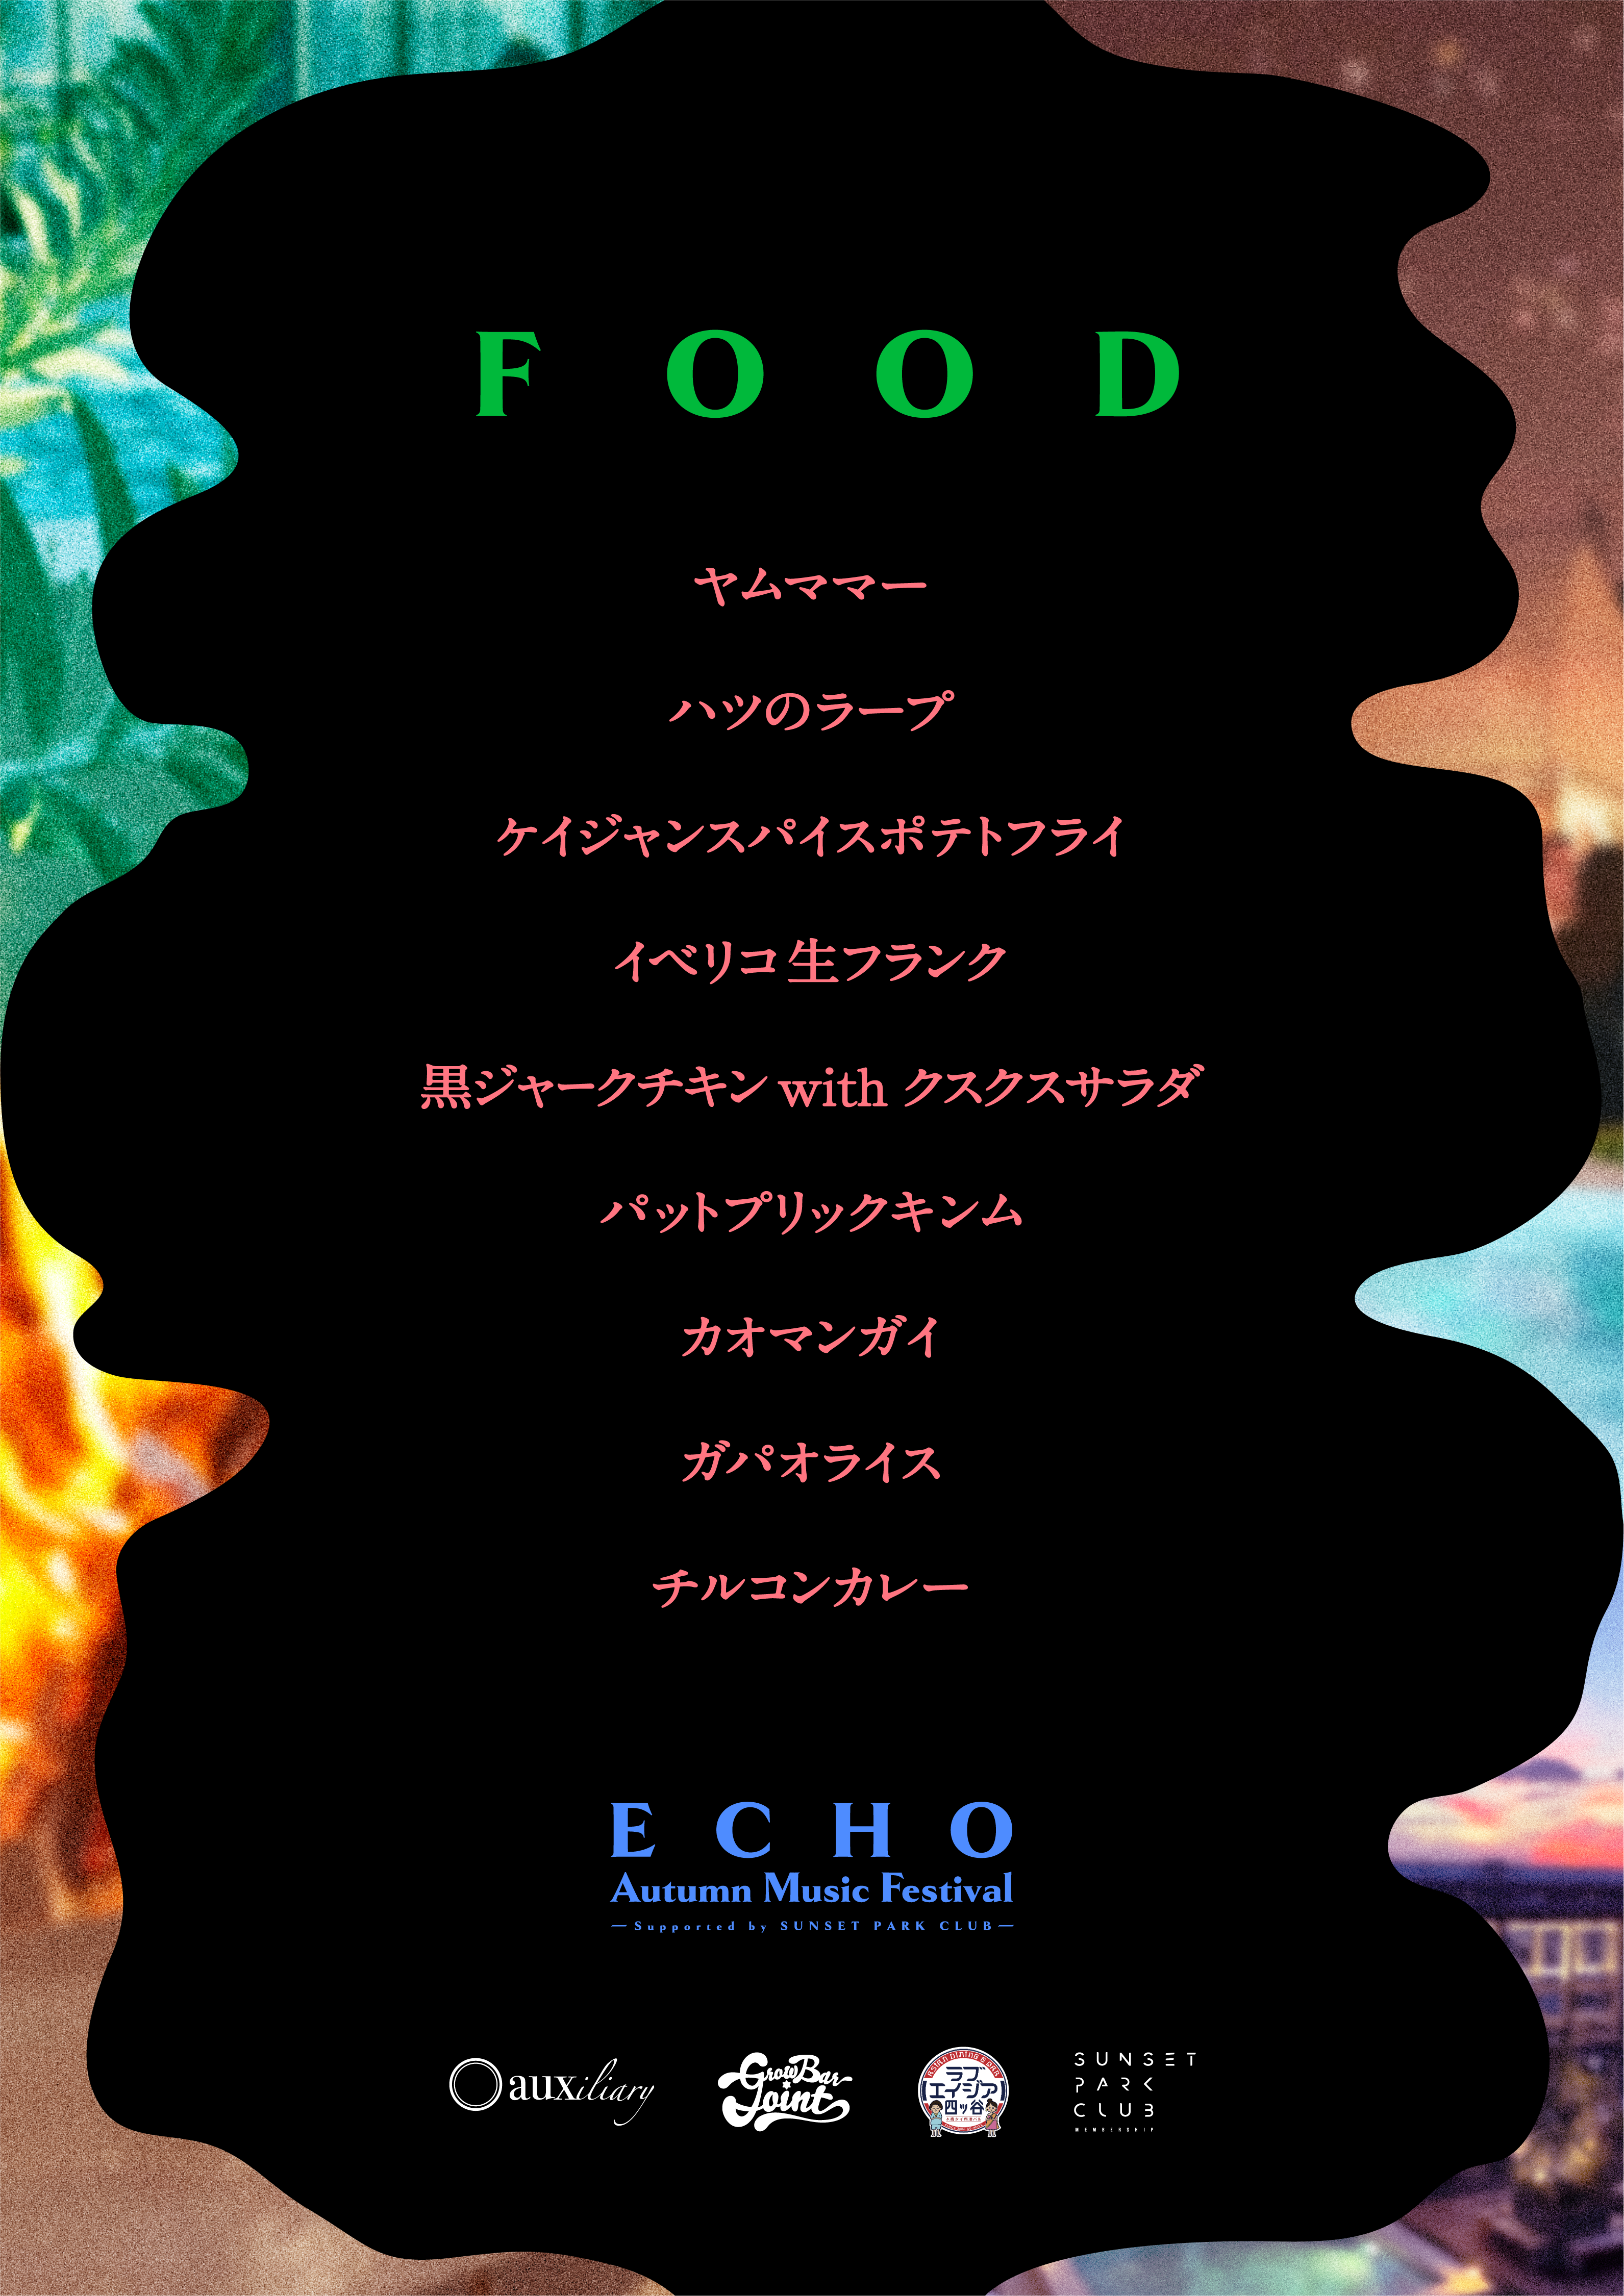 ECHO Vol.26 - Página trasera